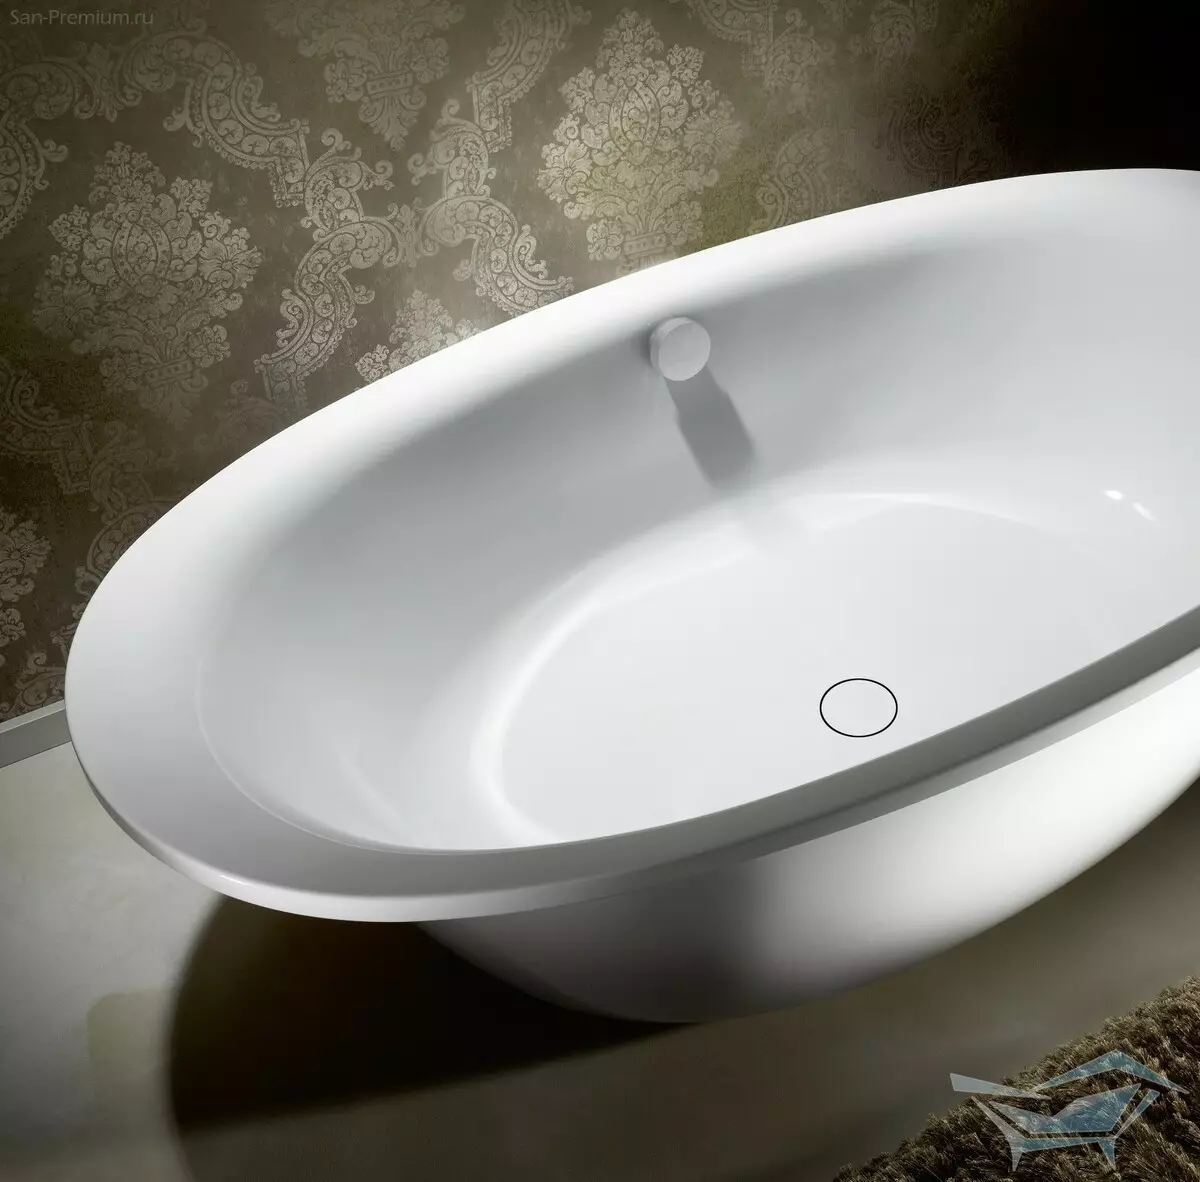 Küçük küvetler: Mini banyo boyutları. Küçük bir banyo seçmek için ipuçları, iç kısımdaki kompakt banyoların örnekleri 10223_52